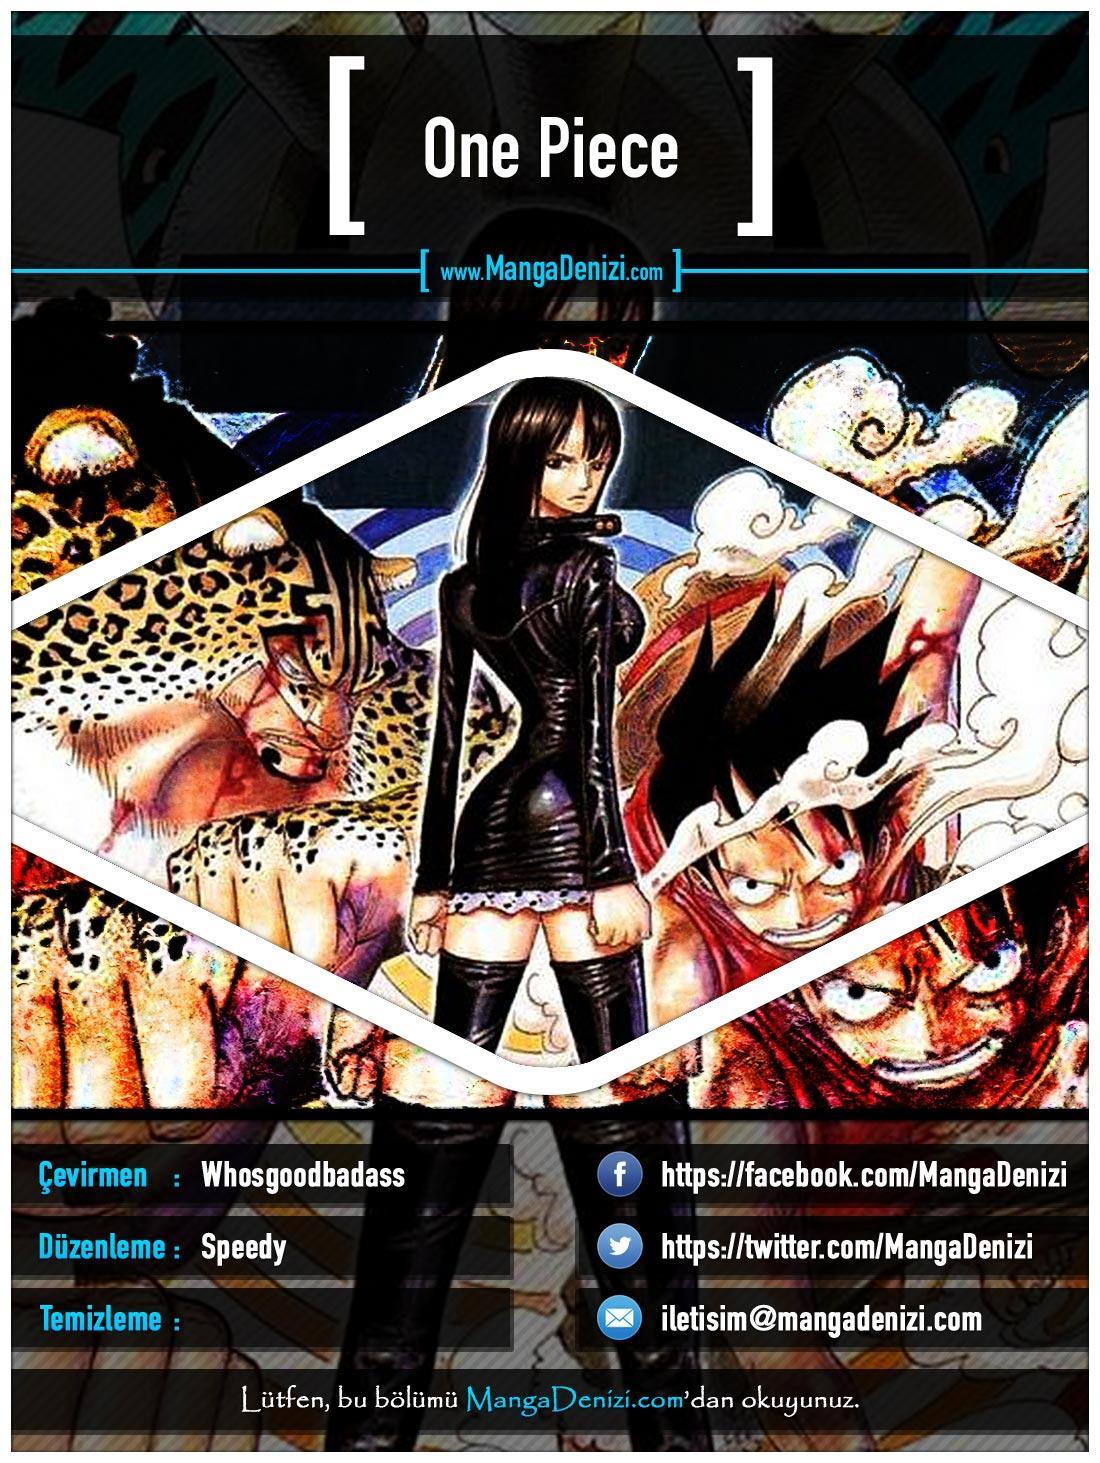 One Piece [Renkli] mangasının 0431 bölümünün 1. sayfasını okuyorsunuz.